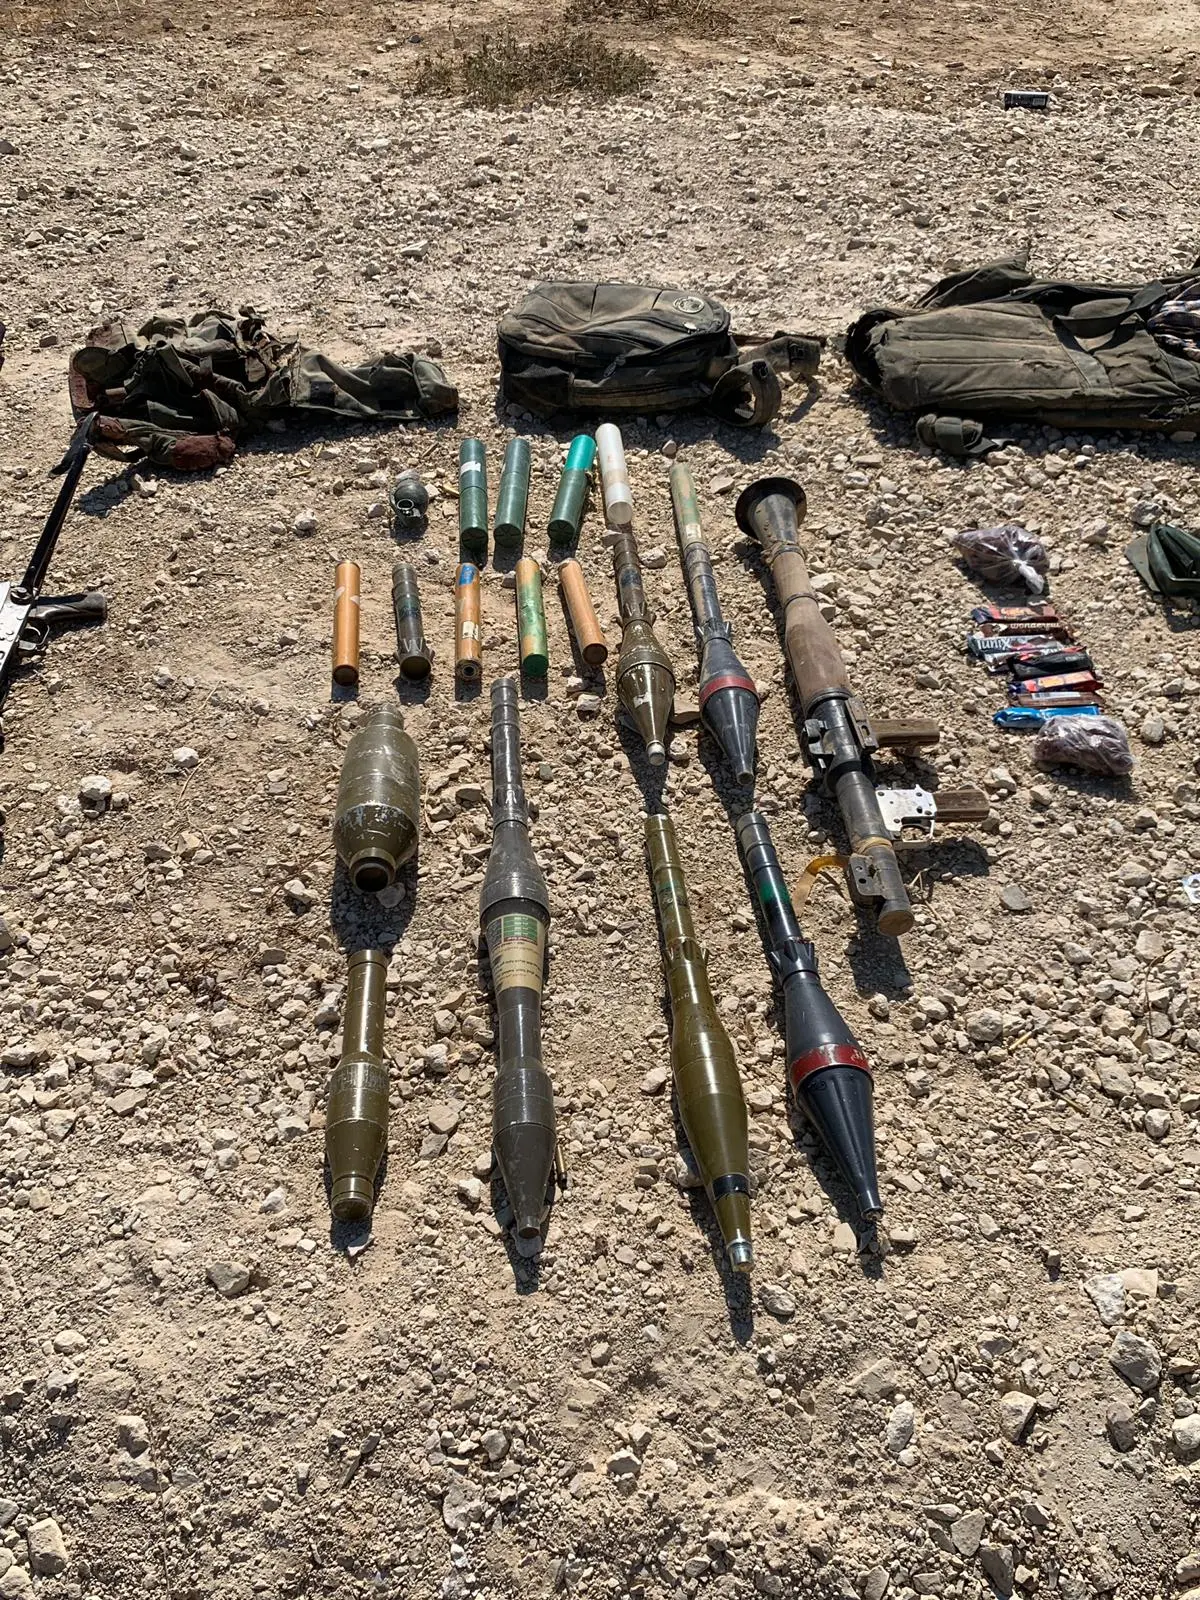 כלי נשק של מחבלי חמאס שחוסלו על ידי צה"ל בניסיון חדירה מרצועת עזה, 10 אוגוססט 2019